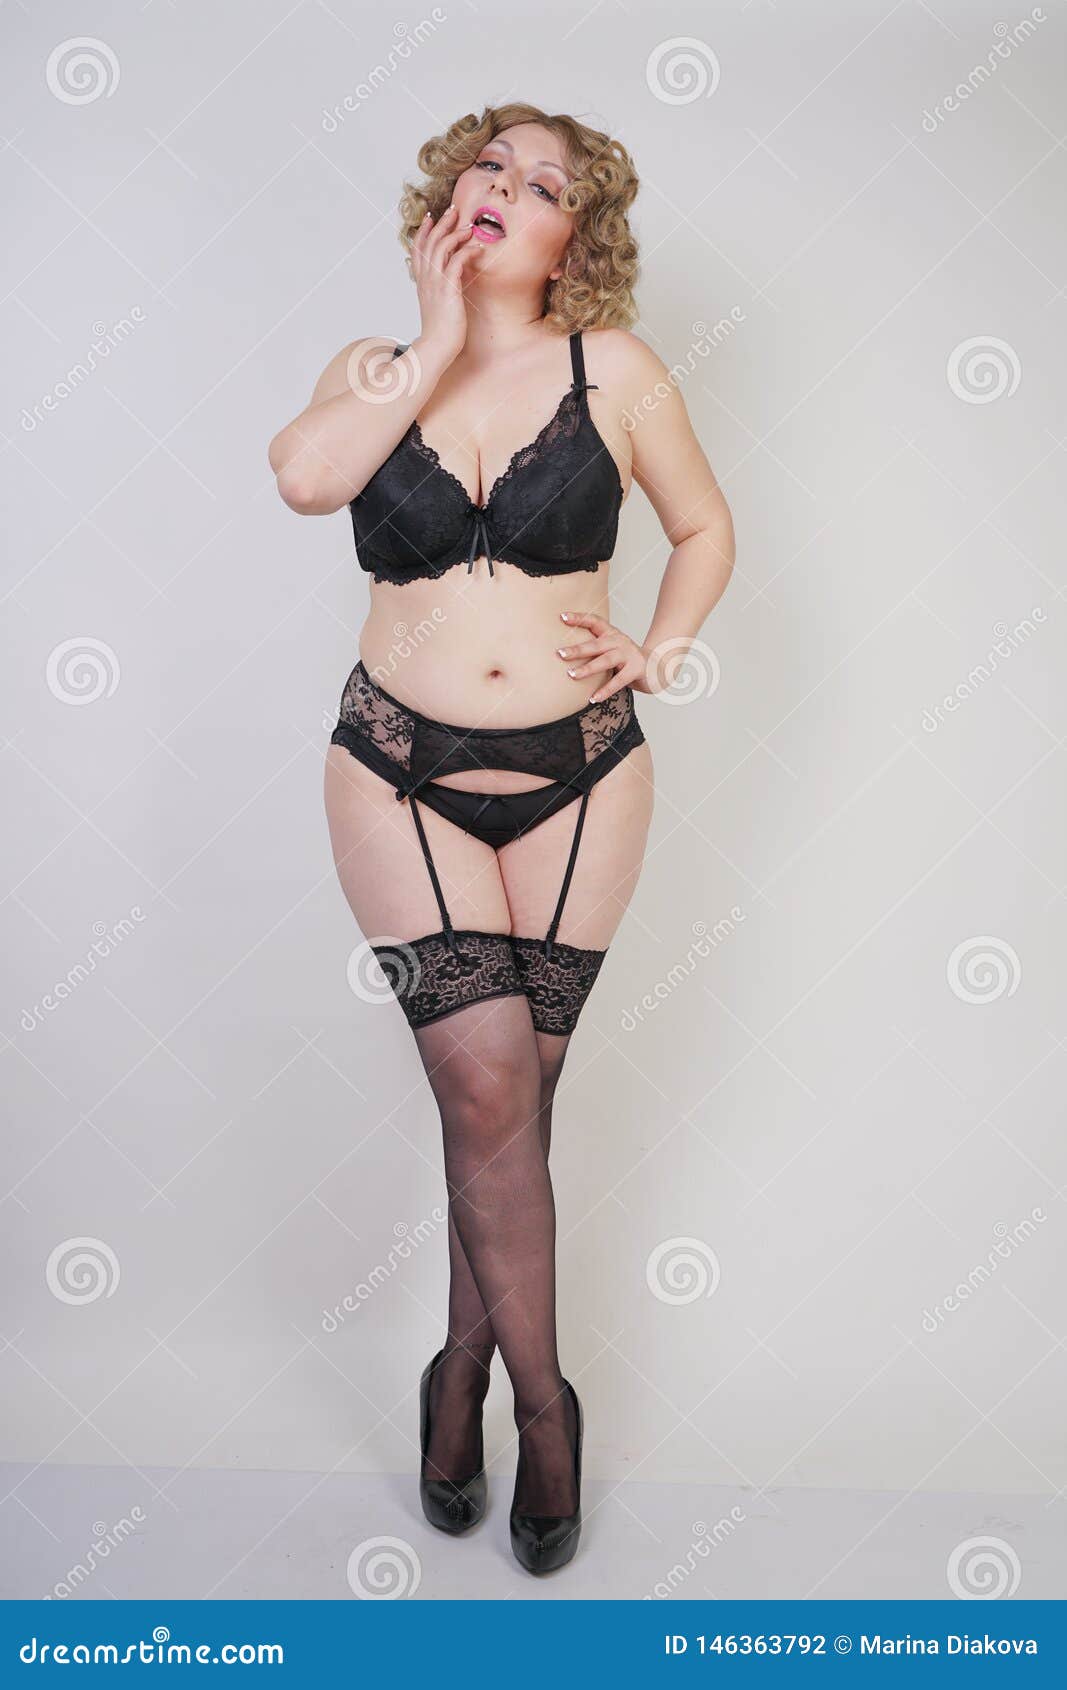 corina nechifor add chubby women in stockings photo